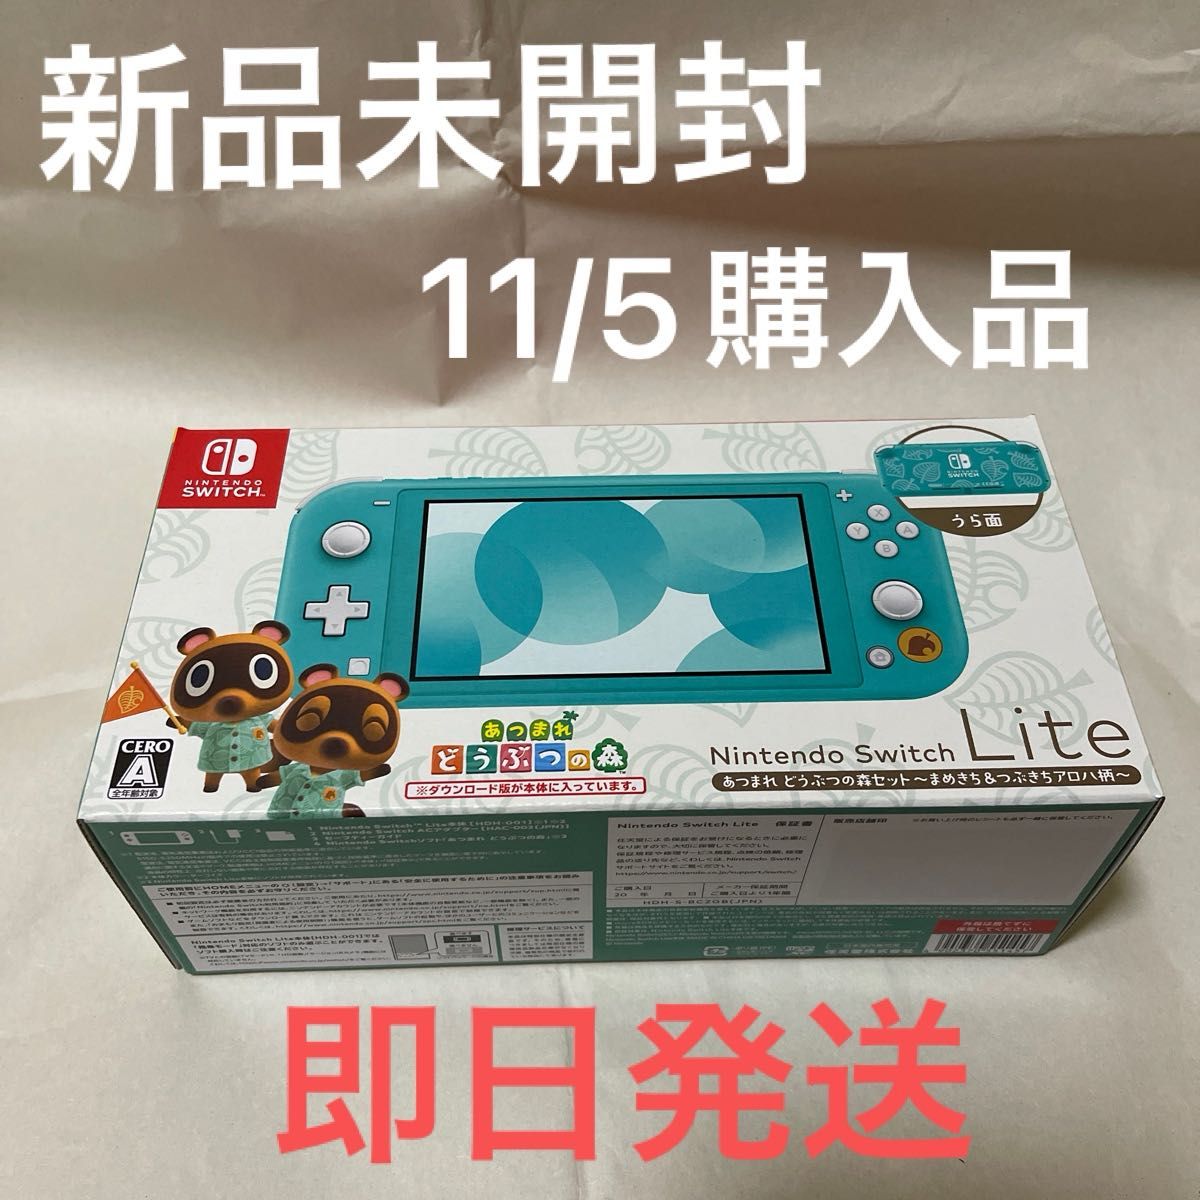 11/5購入品 新品未開封 Nintendo Switch Lite まめきち&つぶきちアロハ